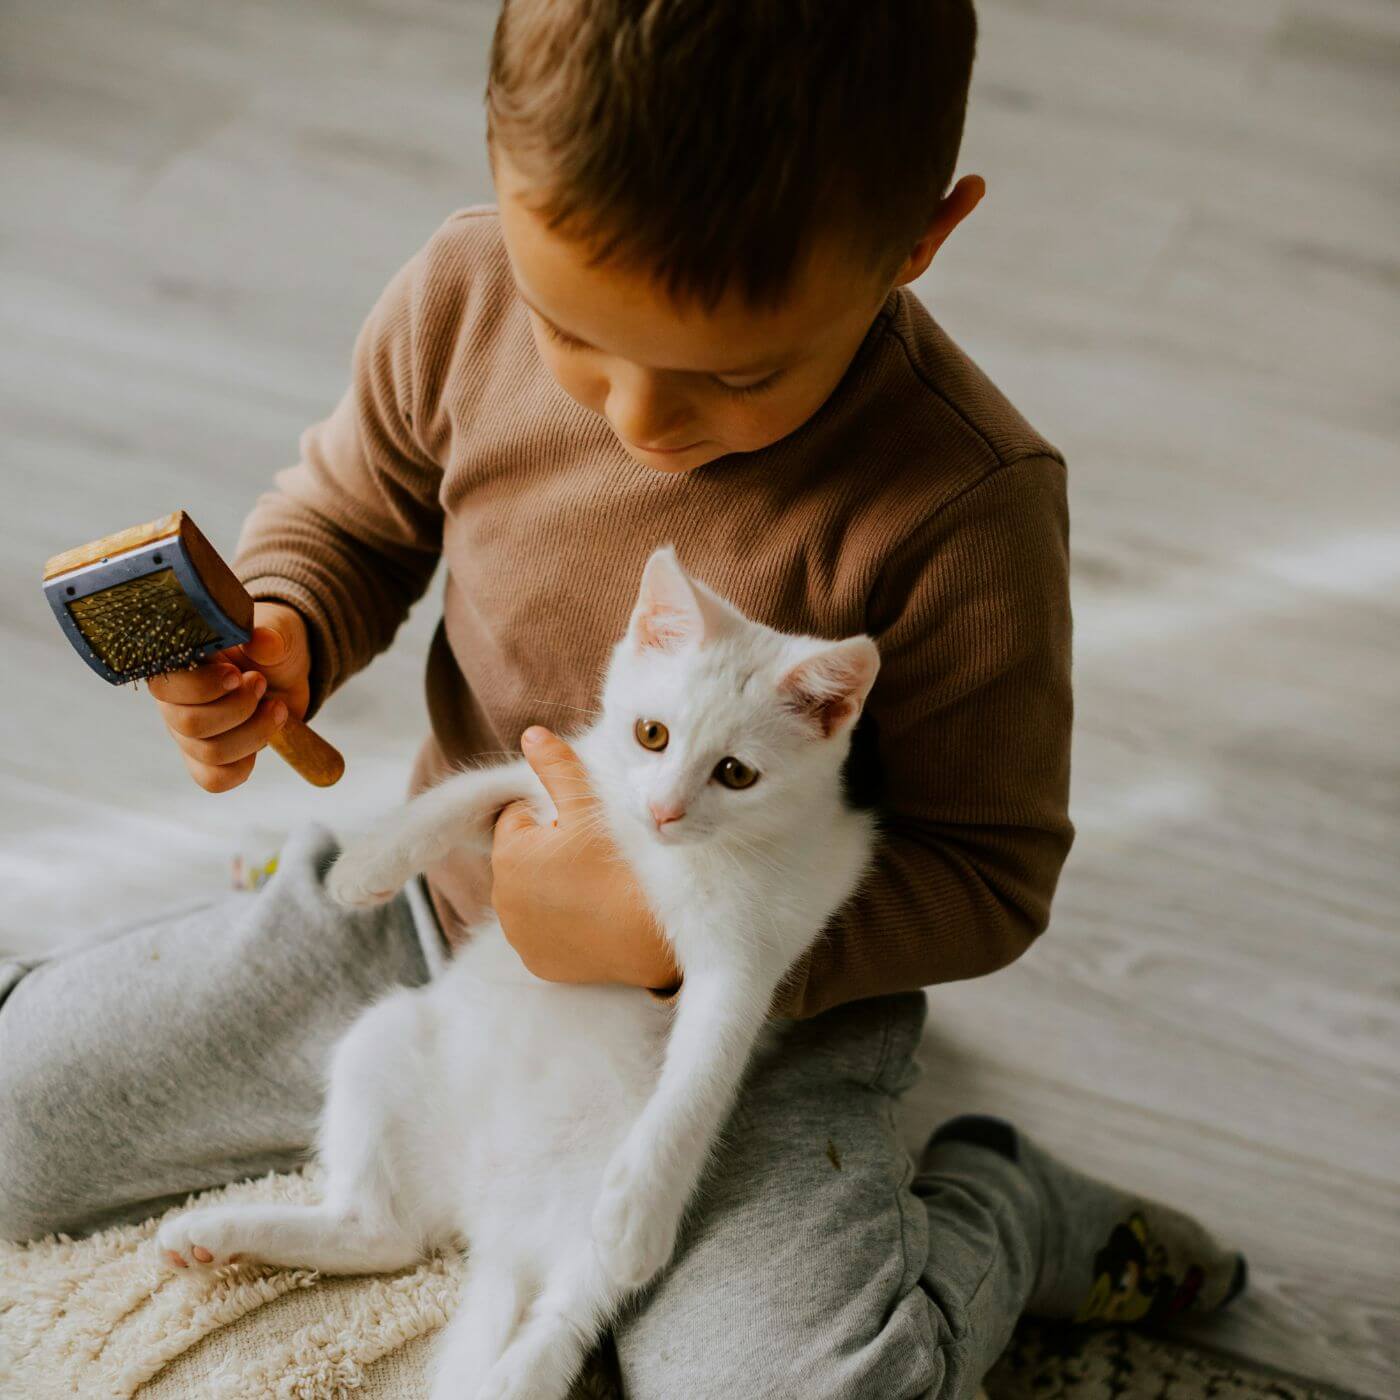 Kleines Kind hält eine weiße Katzen im Arm und eine Bürste